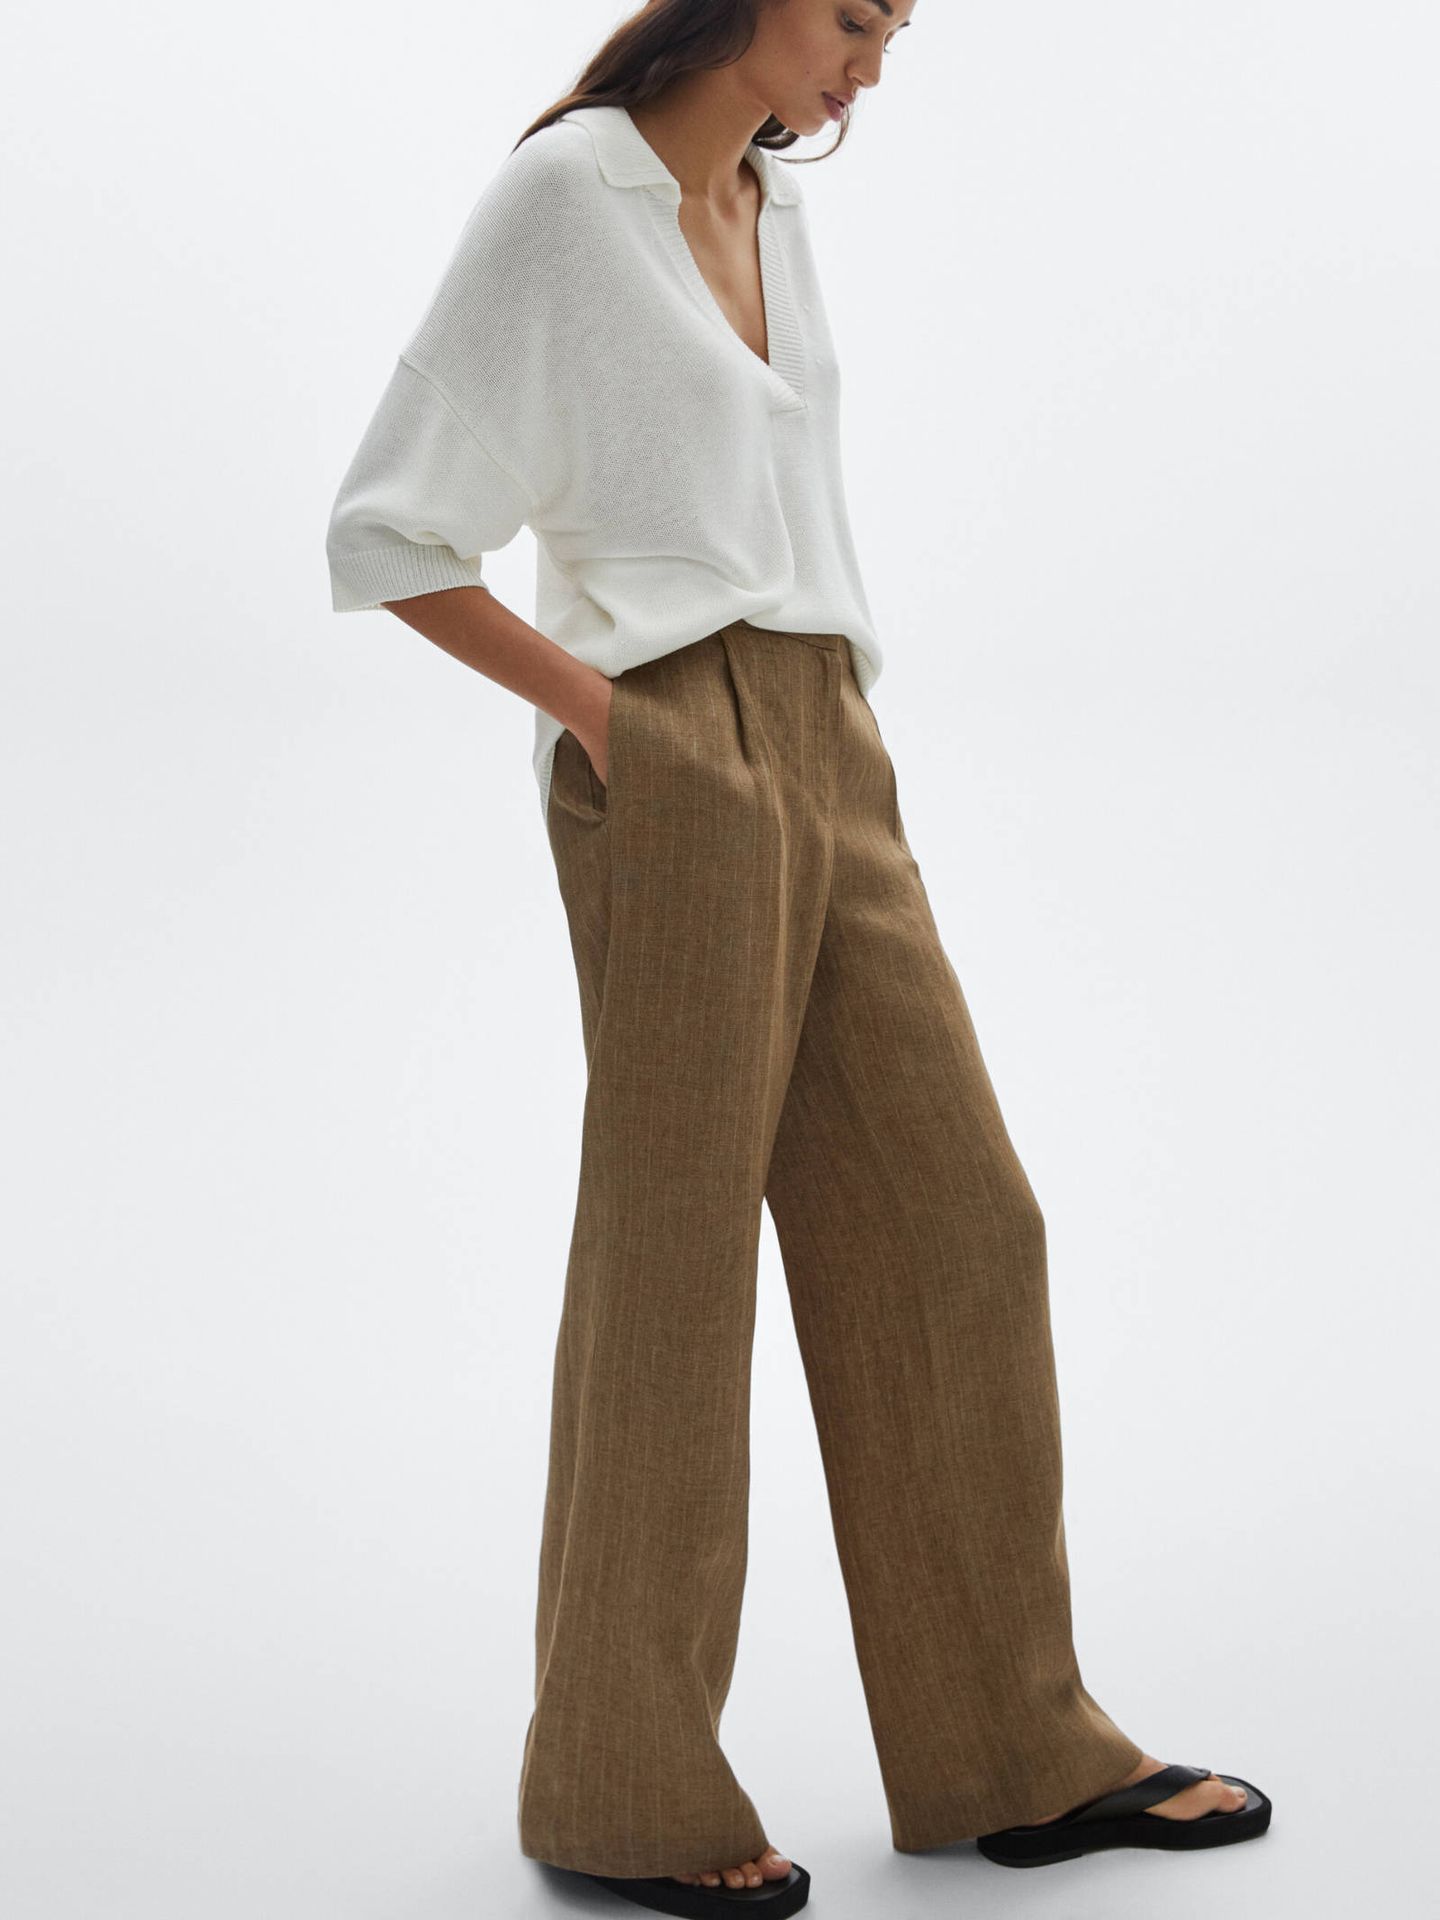 Pantalón de lino en color marrón de Massimo Dutti. (Cortesía)